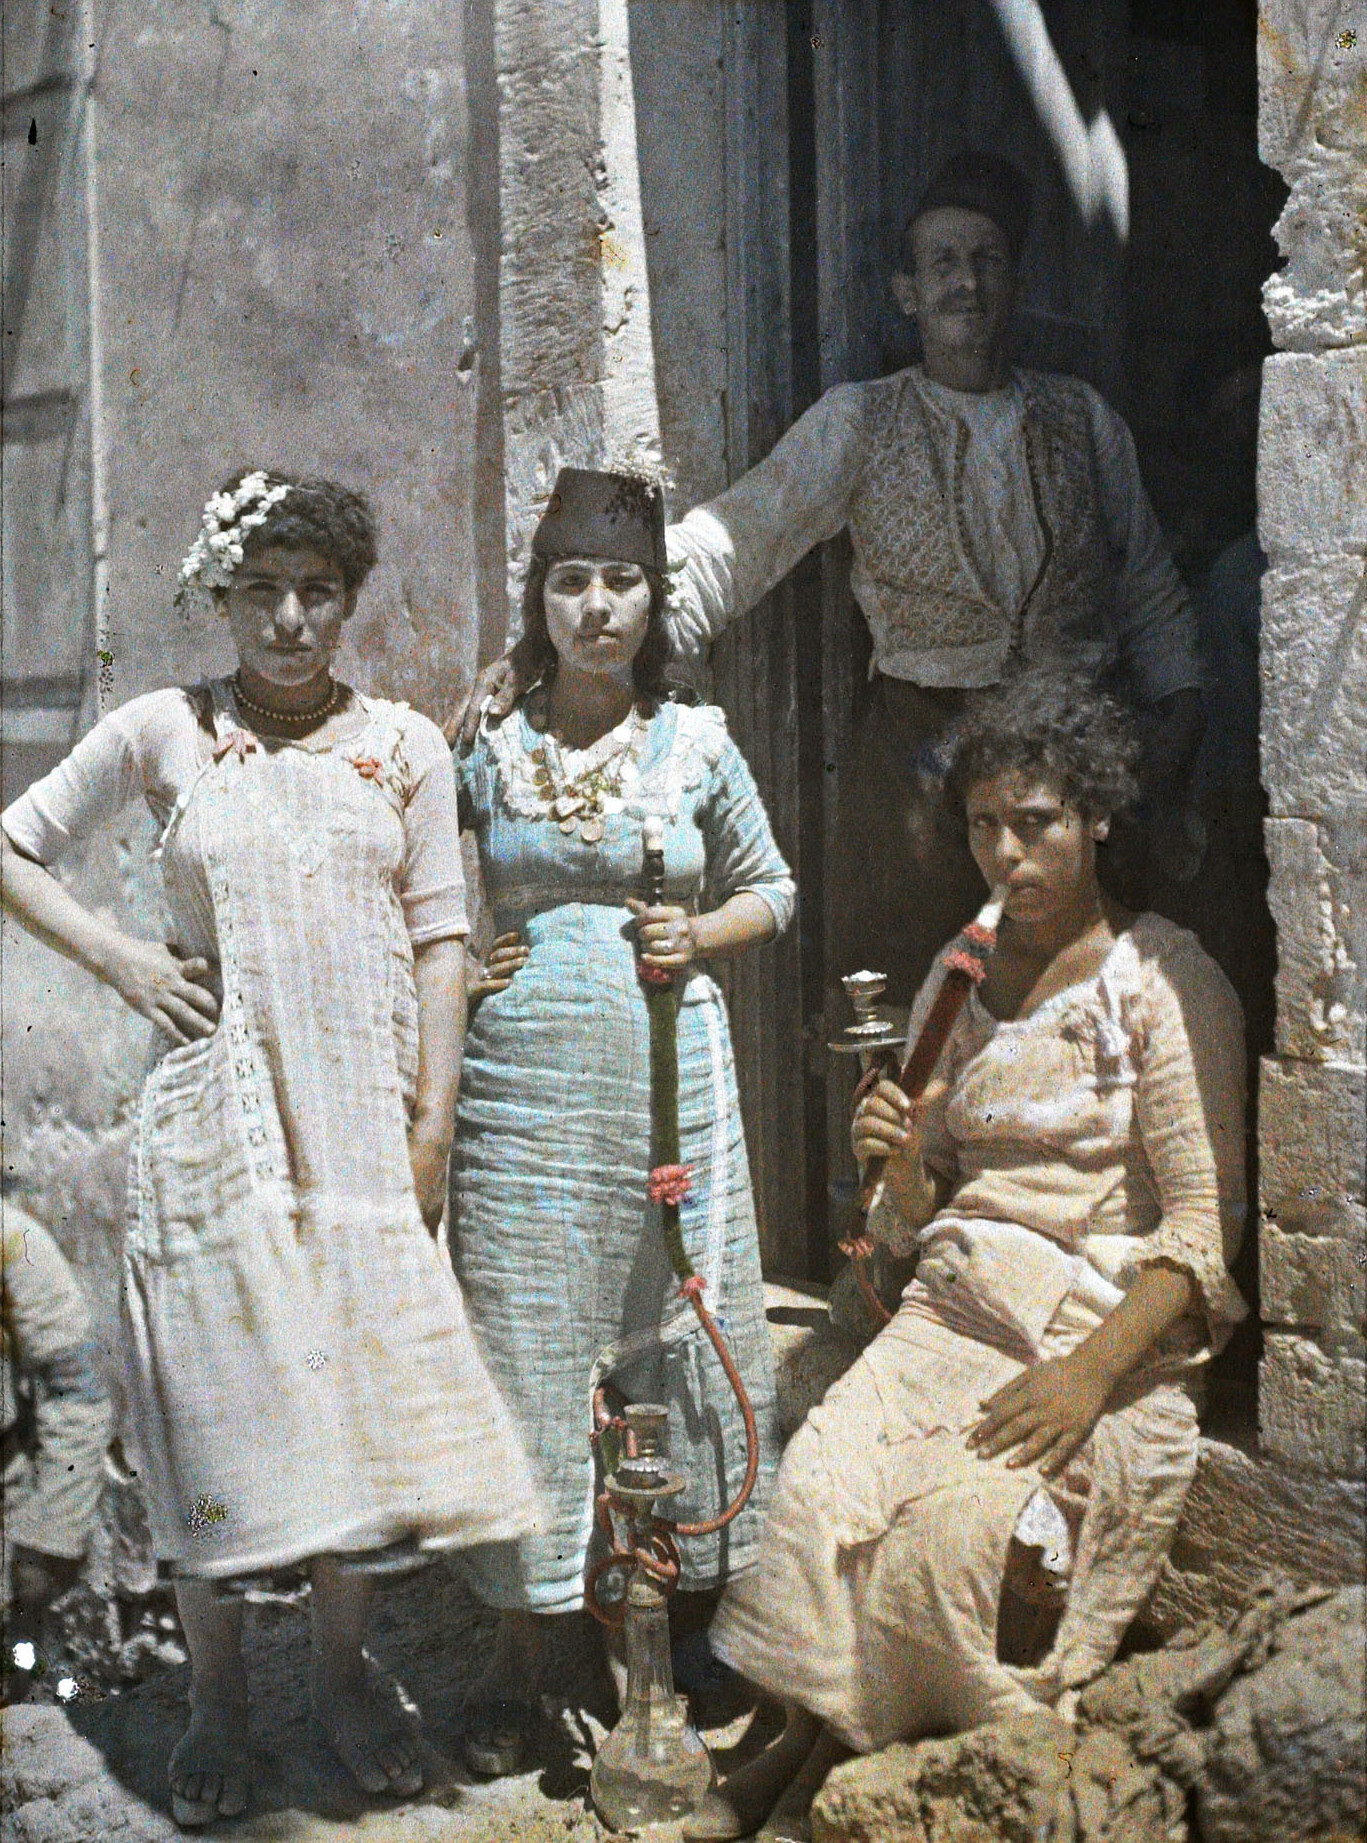 Яффо, Палестина. «Арабские общественные женщины» курят кальян, 1918 год, автор Пол Кастельно (автохром)